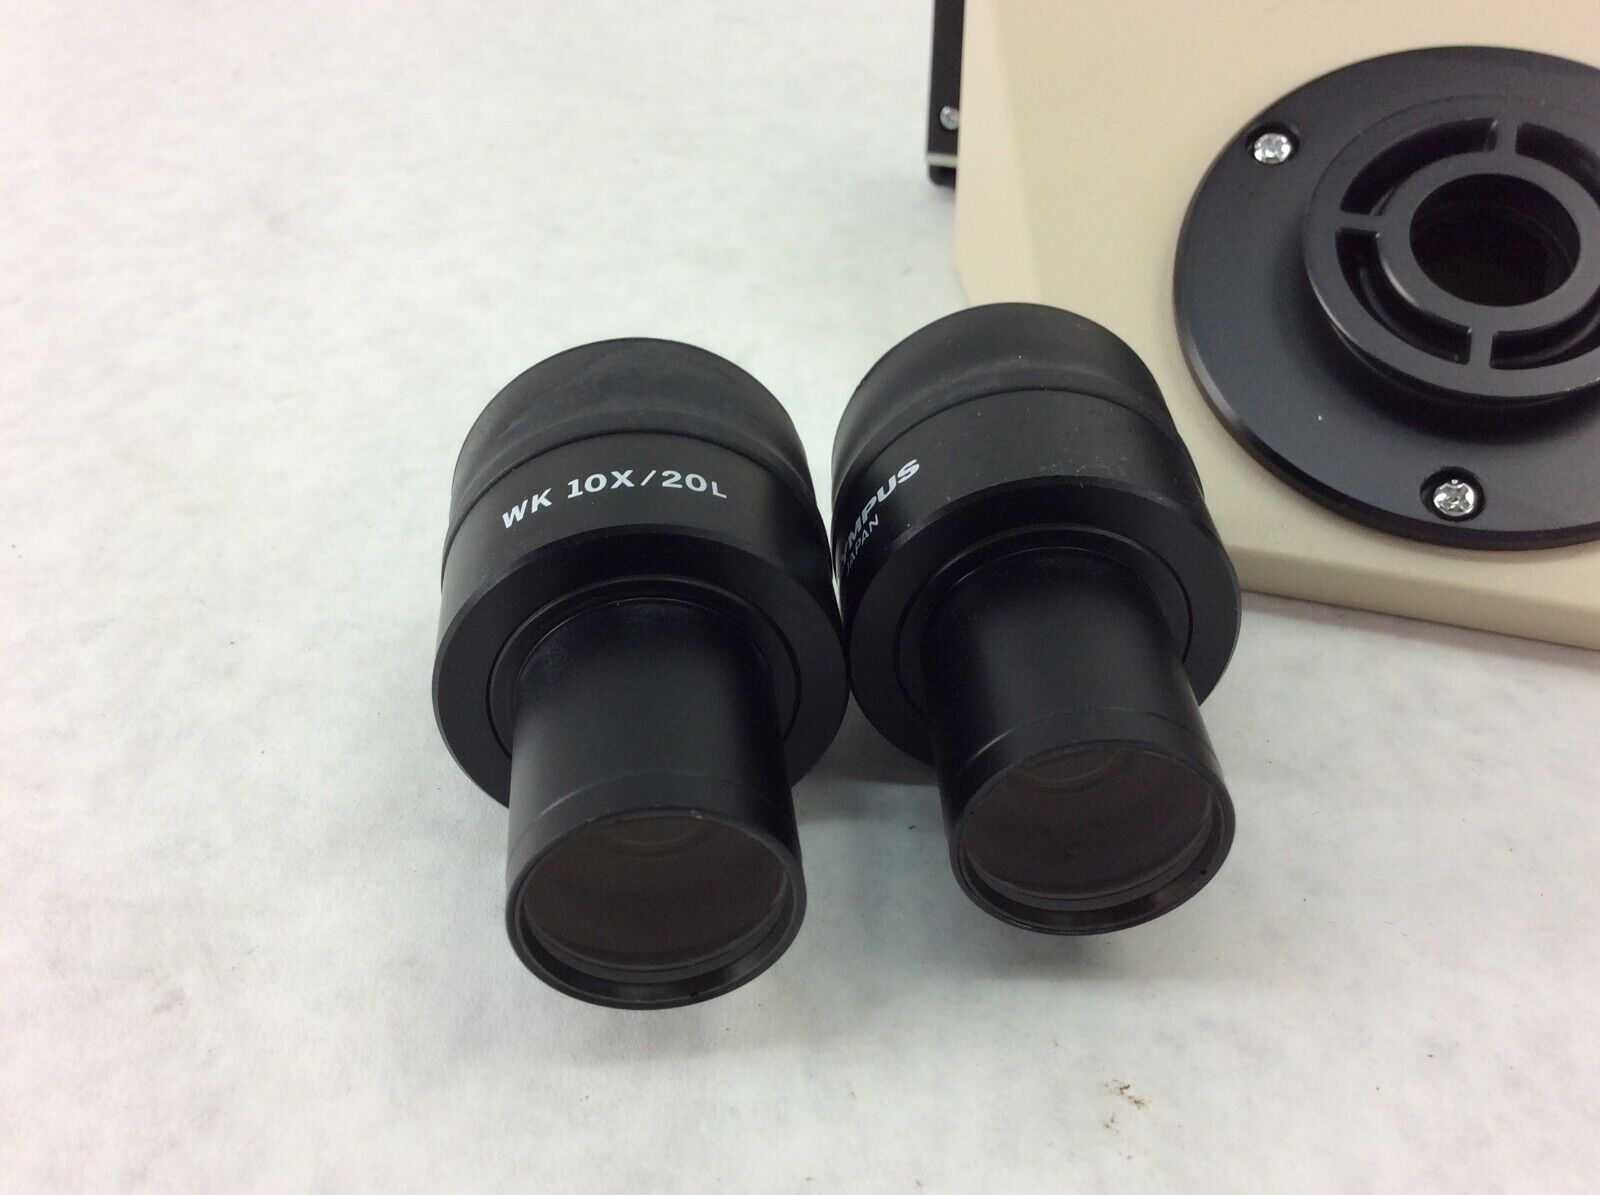 Olympus Microscope BH-2 Binocular Head w/ WK 10X 20L Eye Piece